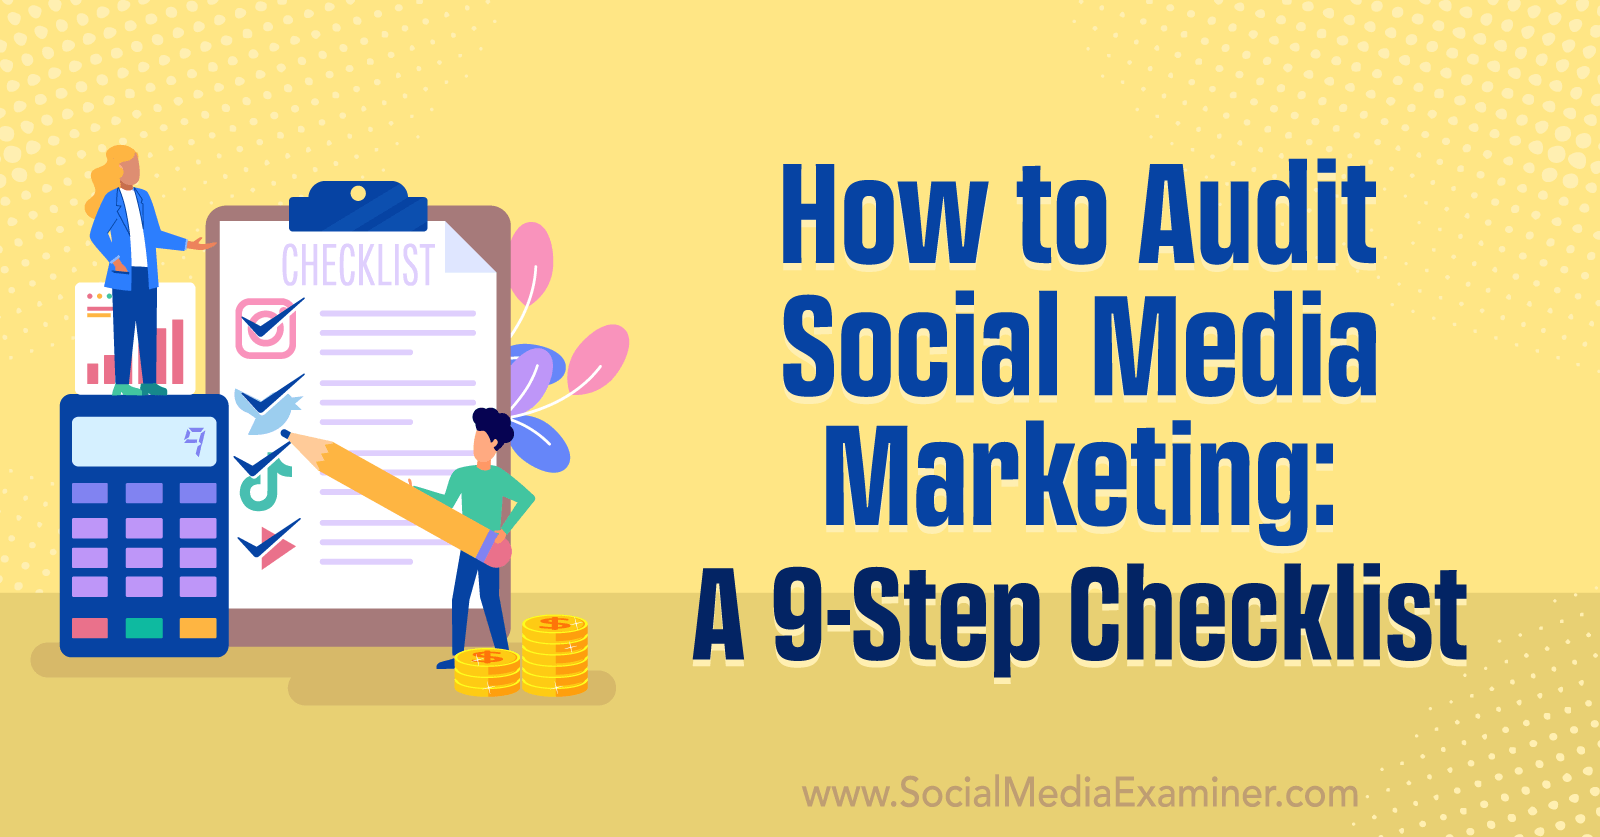 How to Audit Social Media Marketing: A 9-Step Checklist-Social Media Examiner